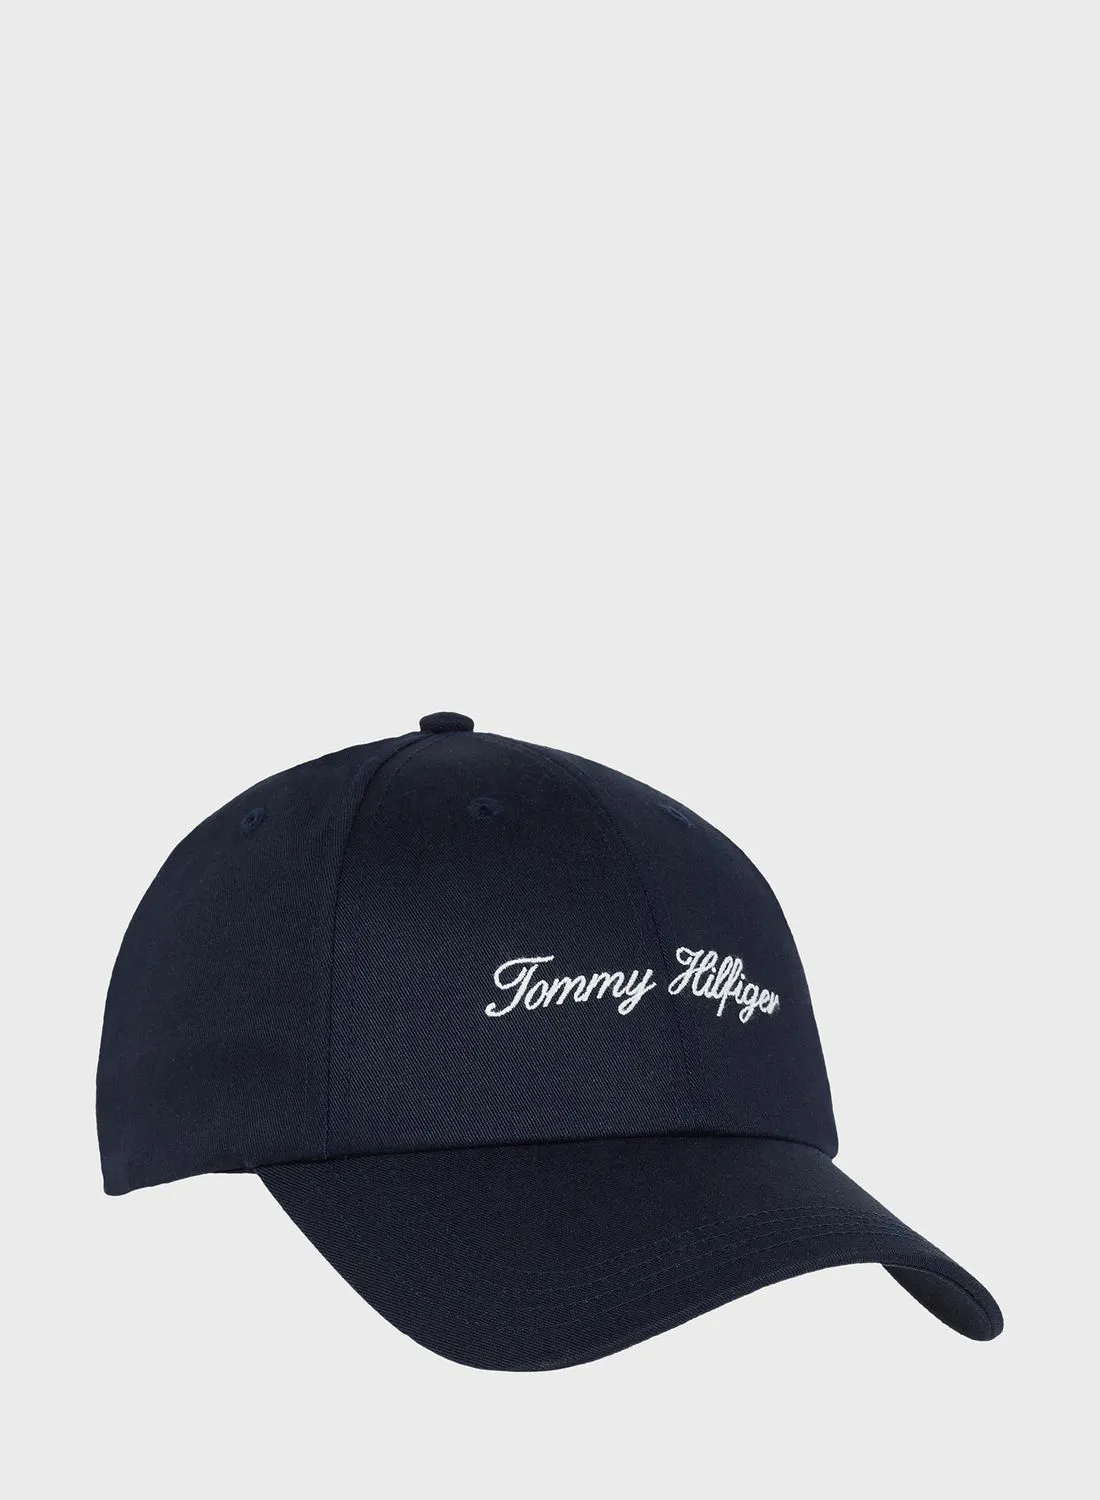 قبعة تومي هيلفيغر ذات قمة منحنية ملتوية